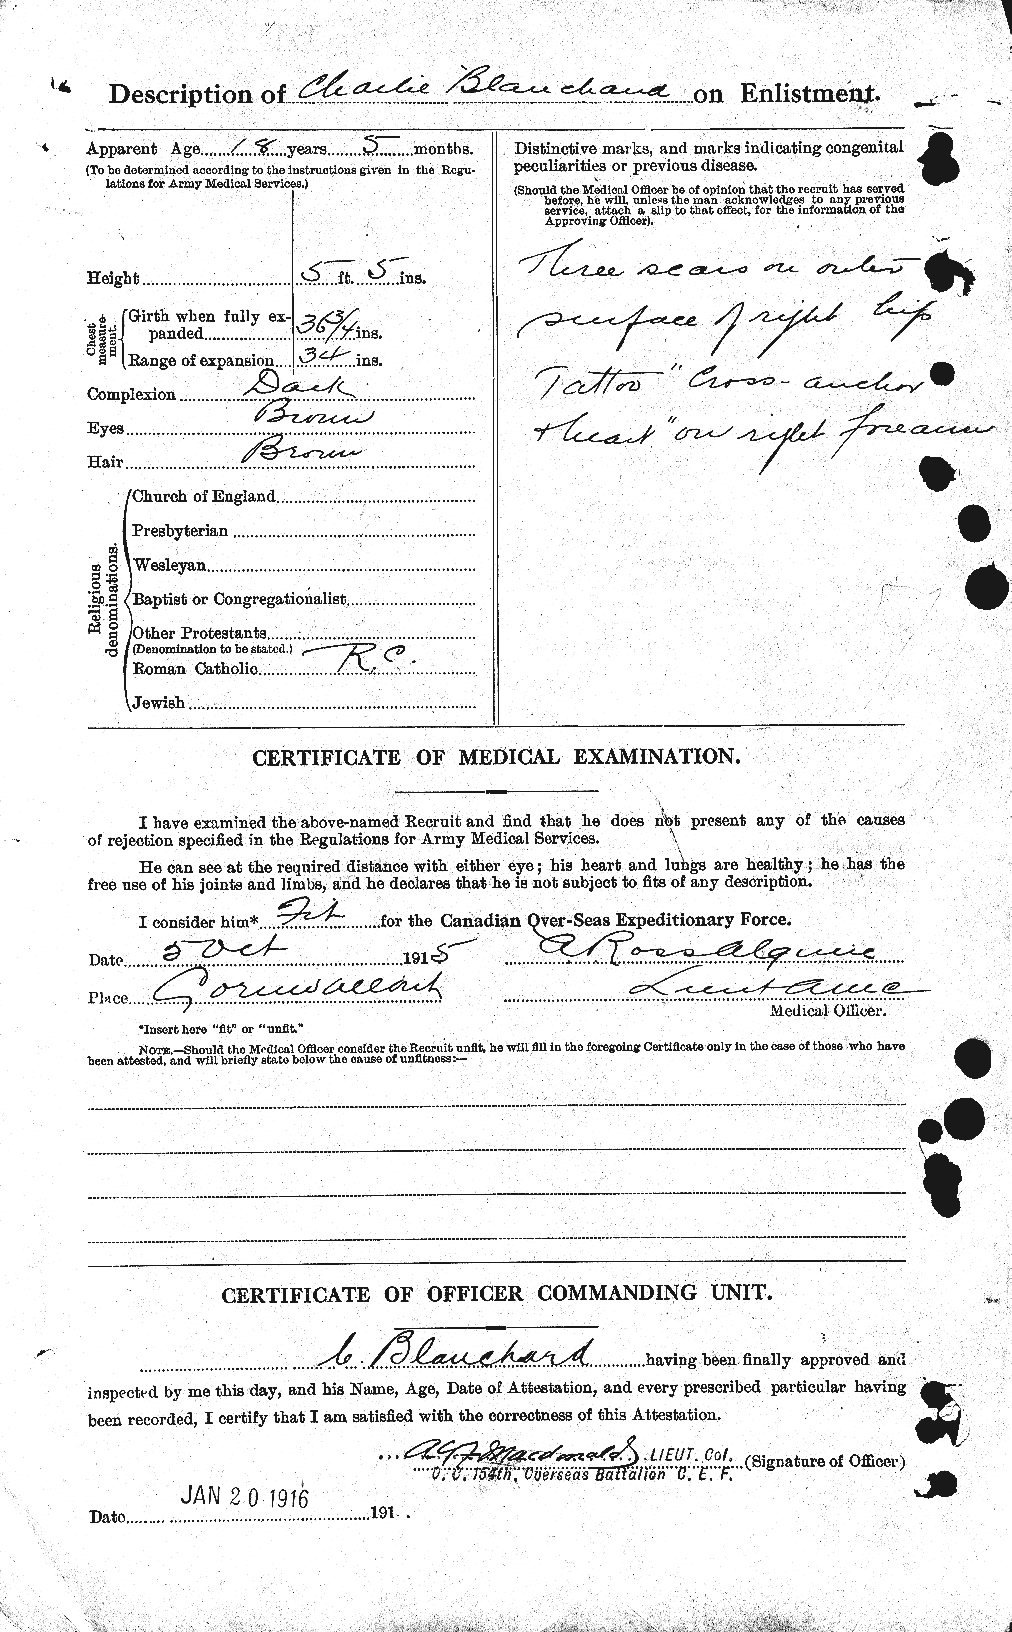 Dossiers du Personnel de la Première Guerre mondiale - CEC 240358b